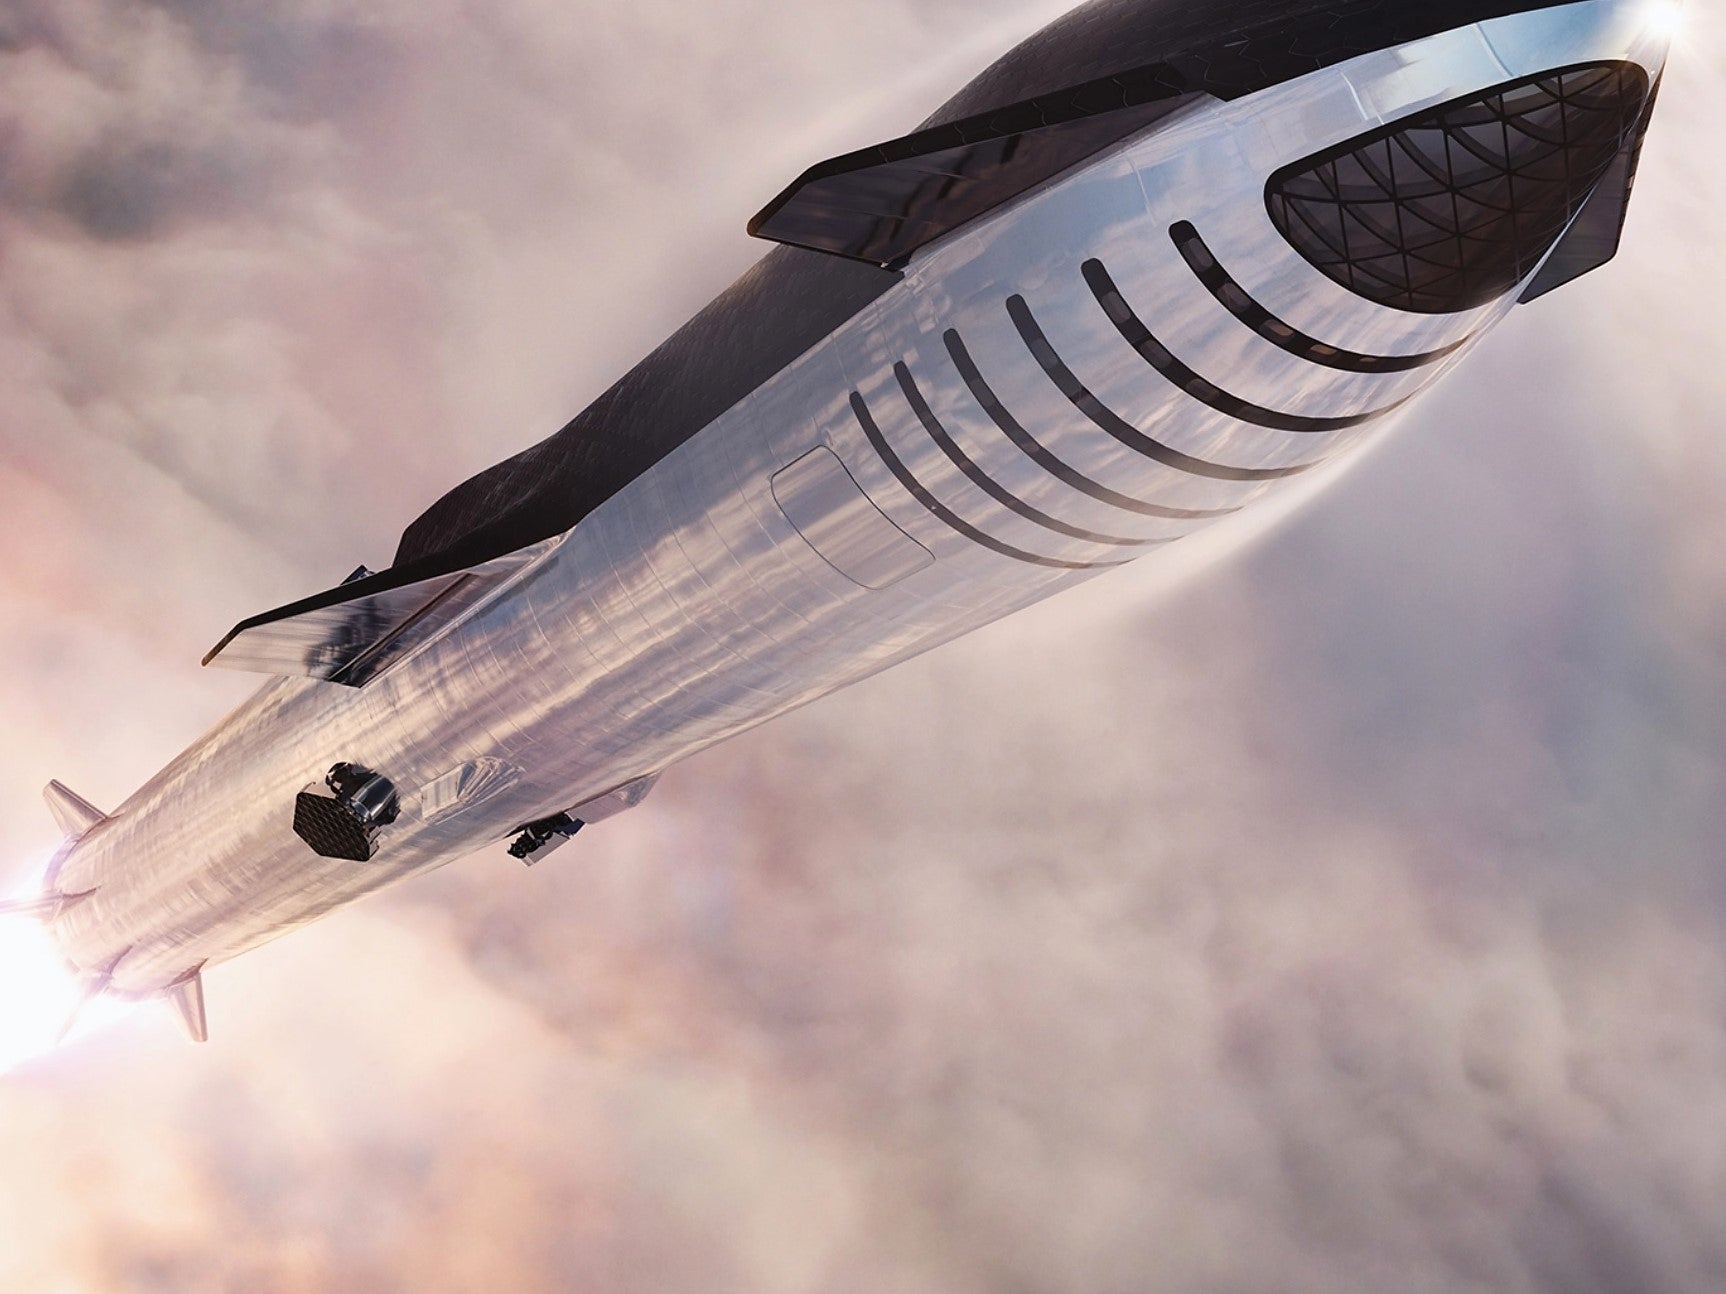 SpaceX espera fabricar 100 cohetes Starship cada año para transportar personas y carga alrededor del Sistema Solar.